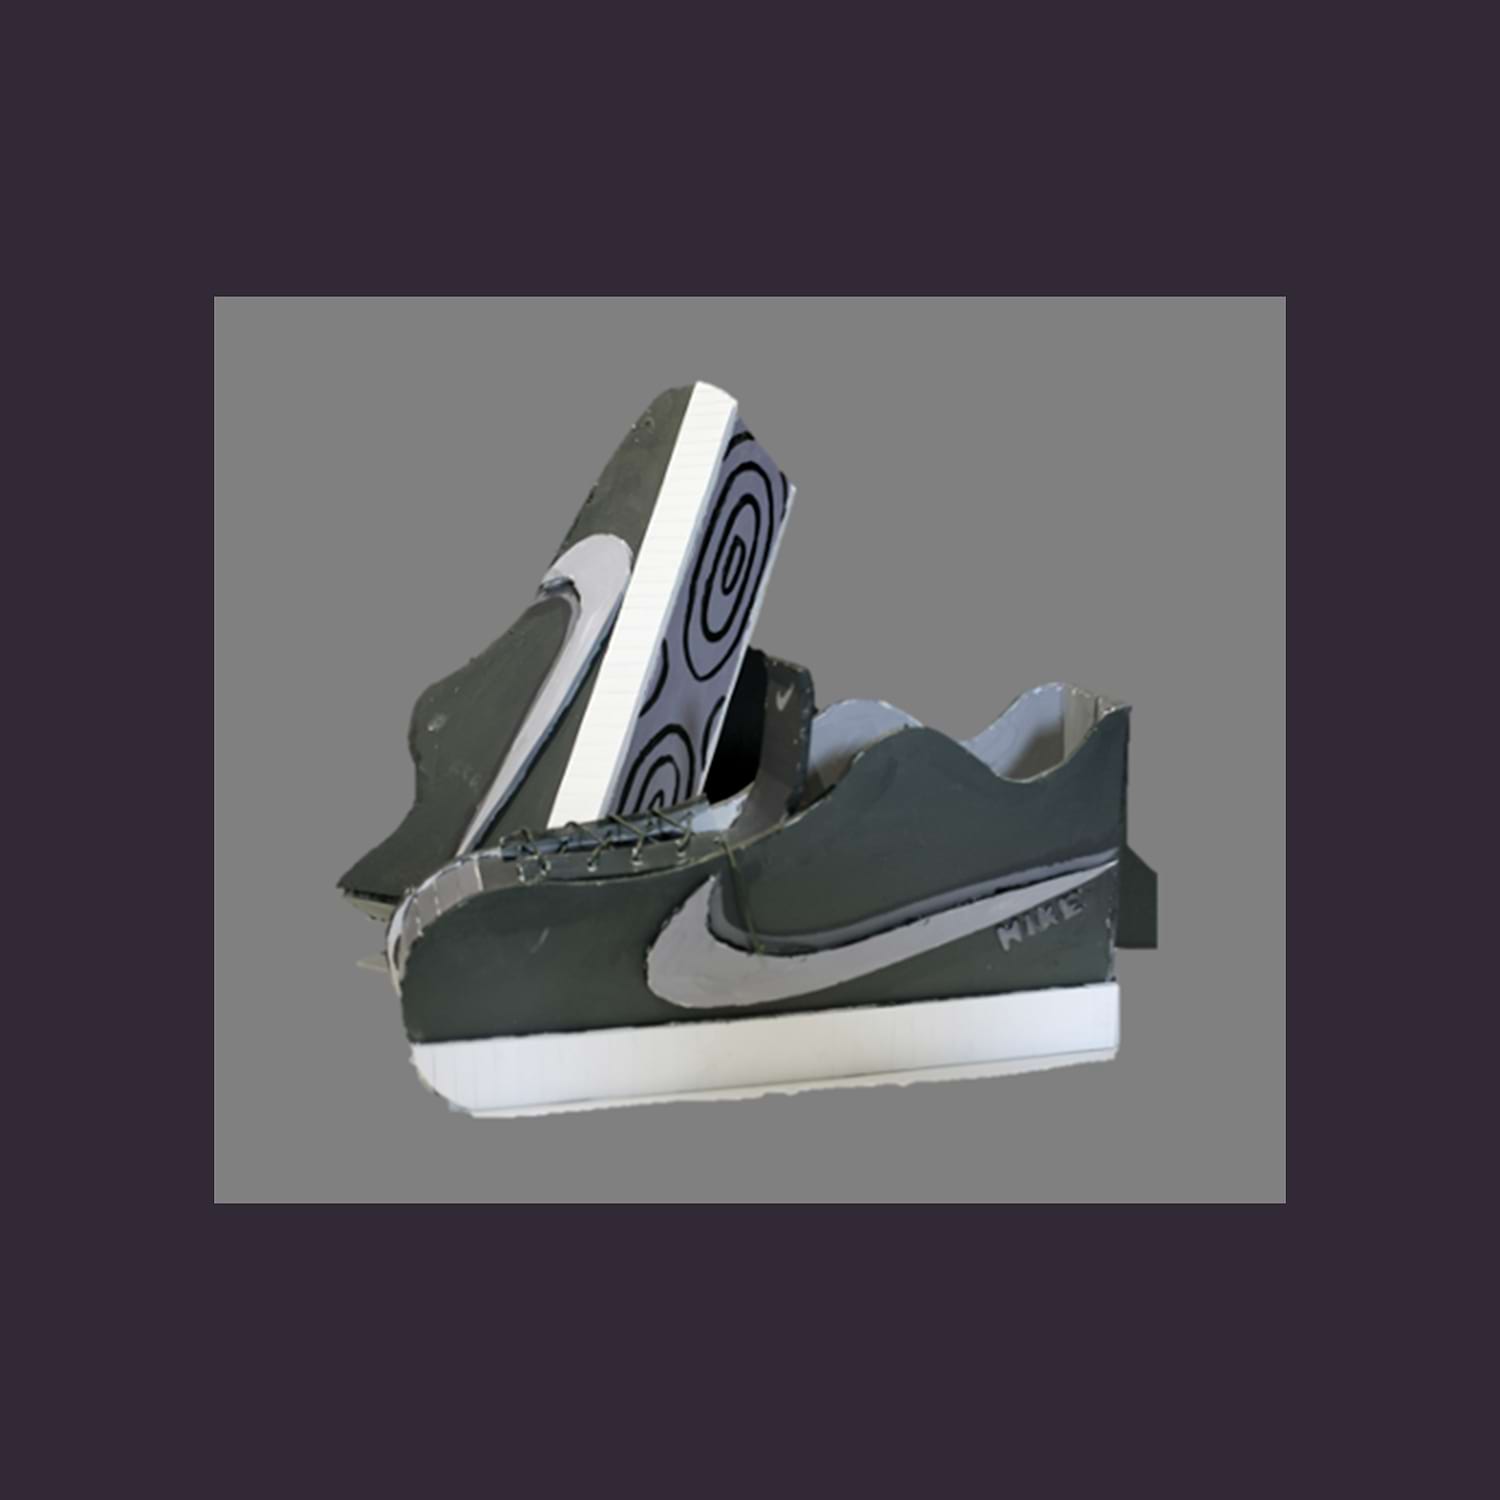  54. Molly Sheehan. Nike Sneakers. Foamboard. 2021.